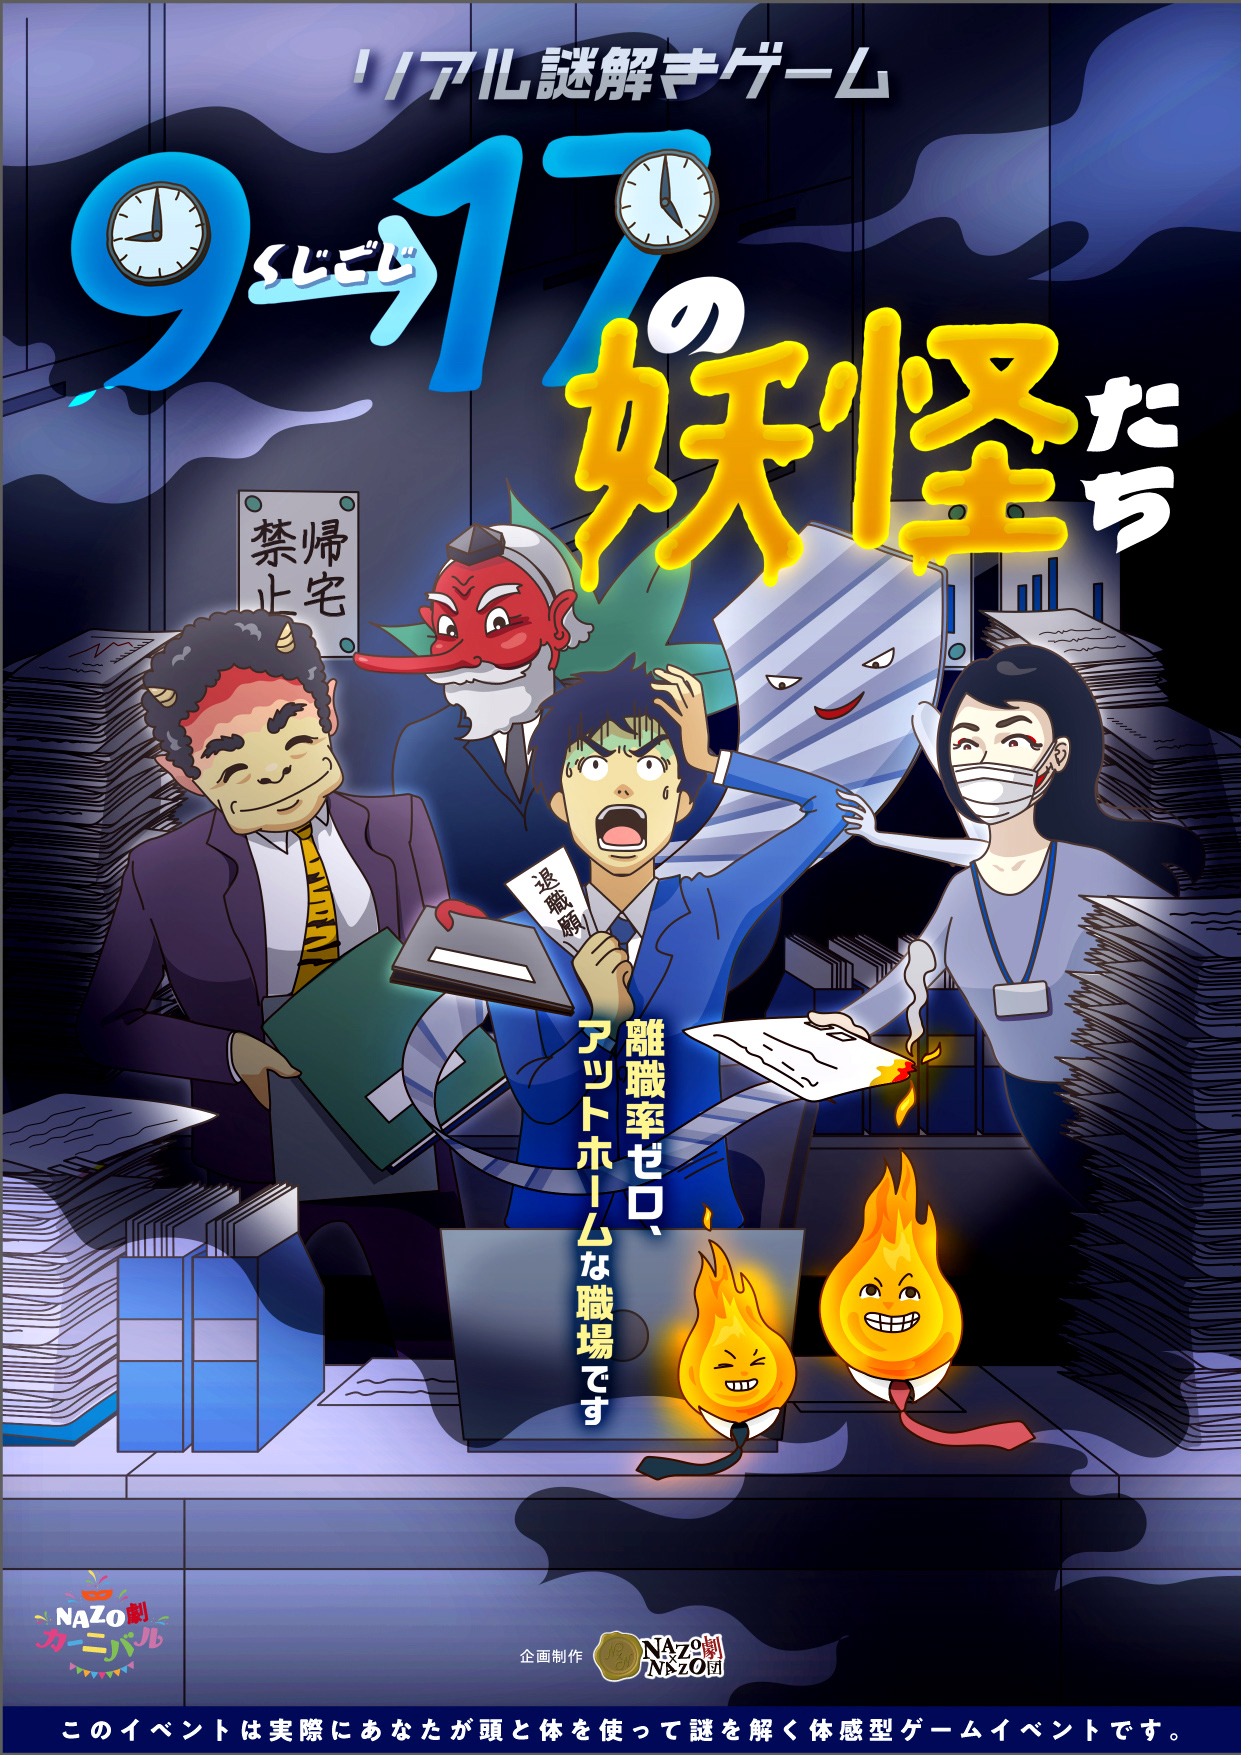 公演型リアル謎解きゲーム「9→17時(くじごじ)の妖怪たち」（渋谷）